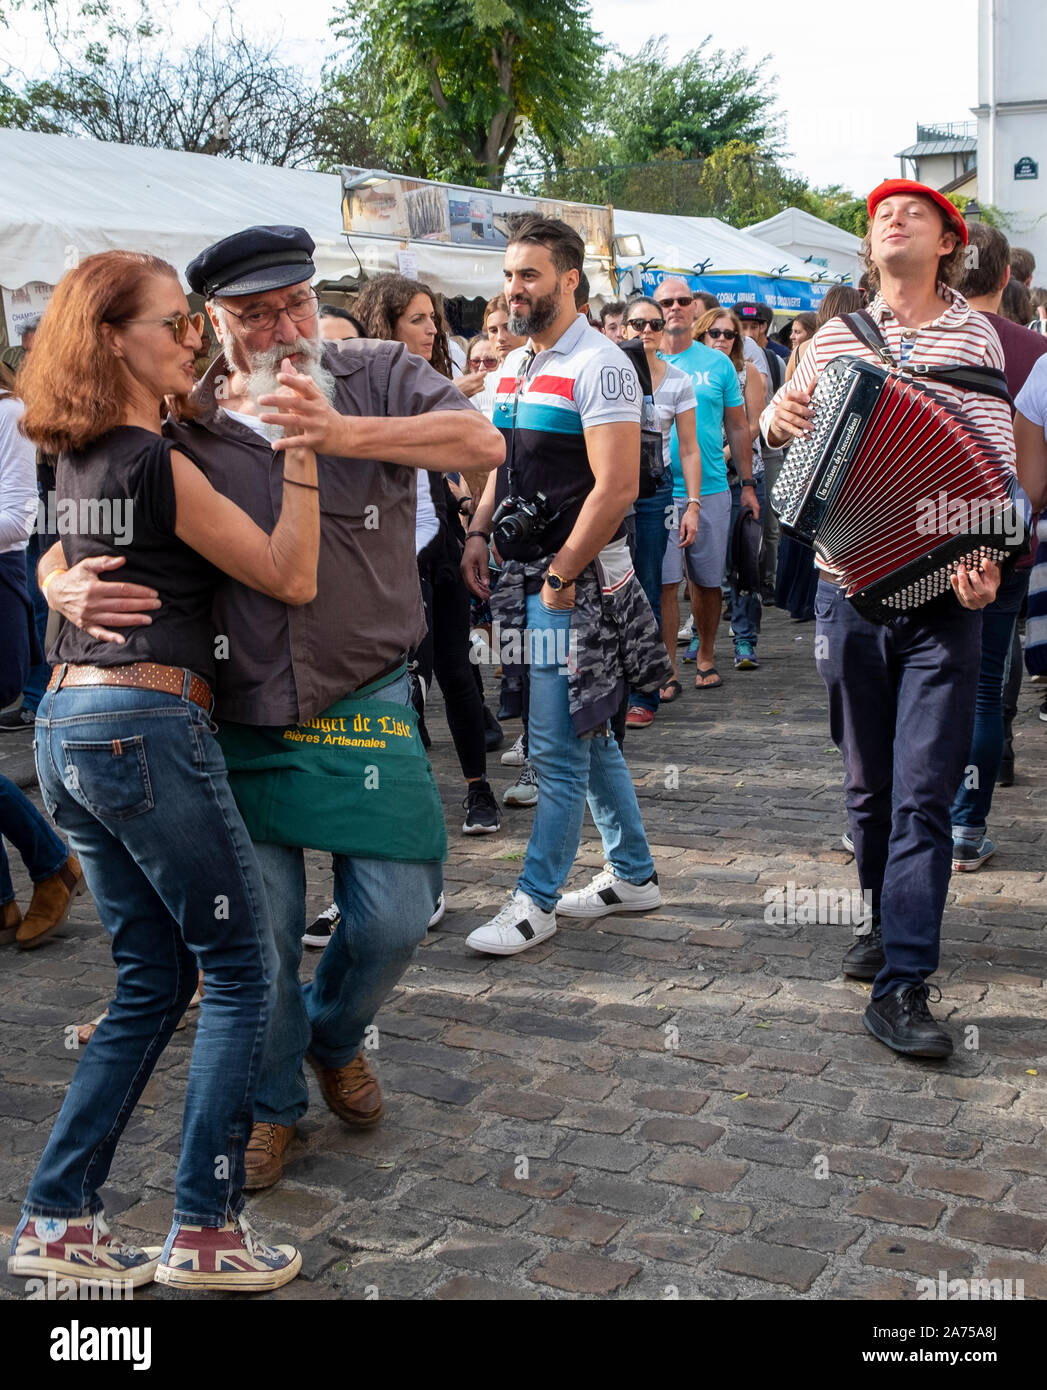 A couple dances to the chansonnier's song at the fete de vendanges below Sacre Coeur in Paris's Montmartre neighborhood. Stock Photo